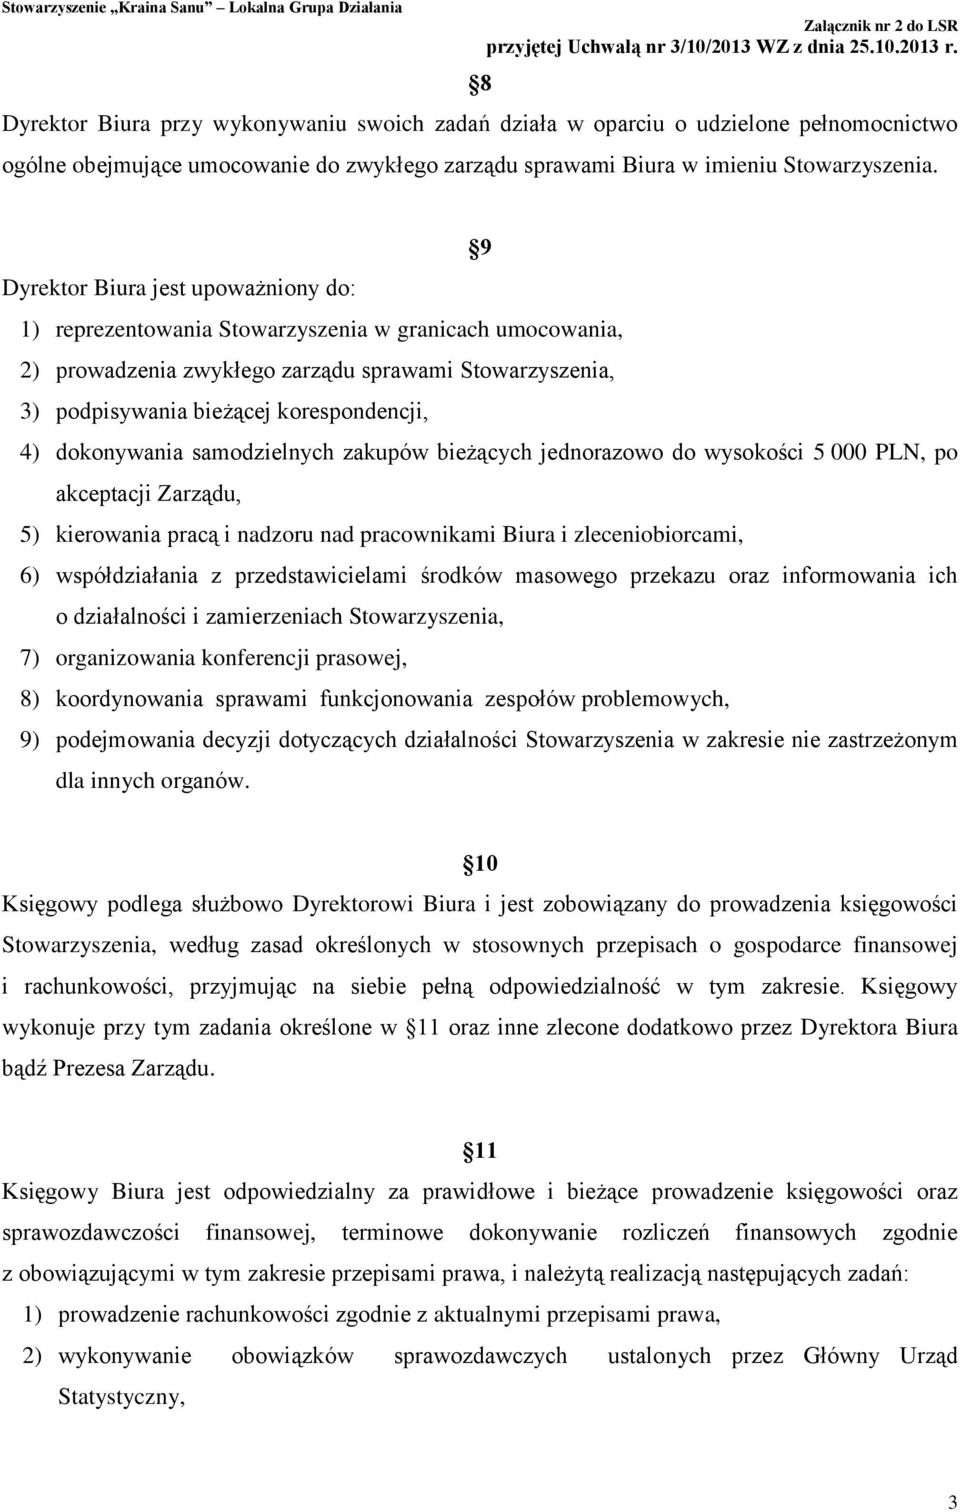 dokonywania samodzielnych zakupów bieżących jednorazowo do wysokości 5 000 PLN, po akceptacji Zarządu, 5) kierowania pracą i nadzoru nad pracownikami Biura i zleceniobiorcami, 6) współdziałania z